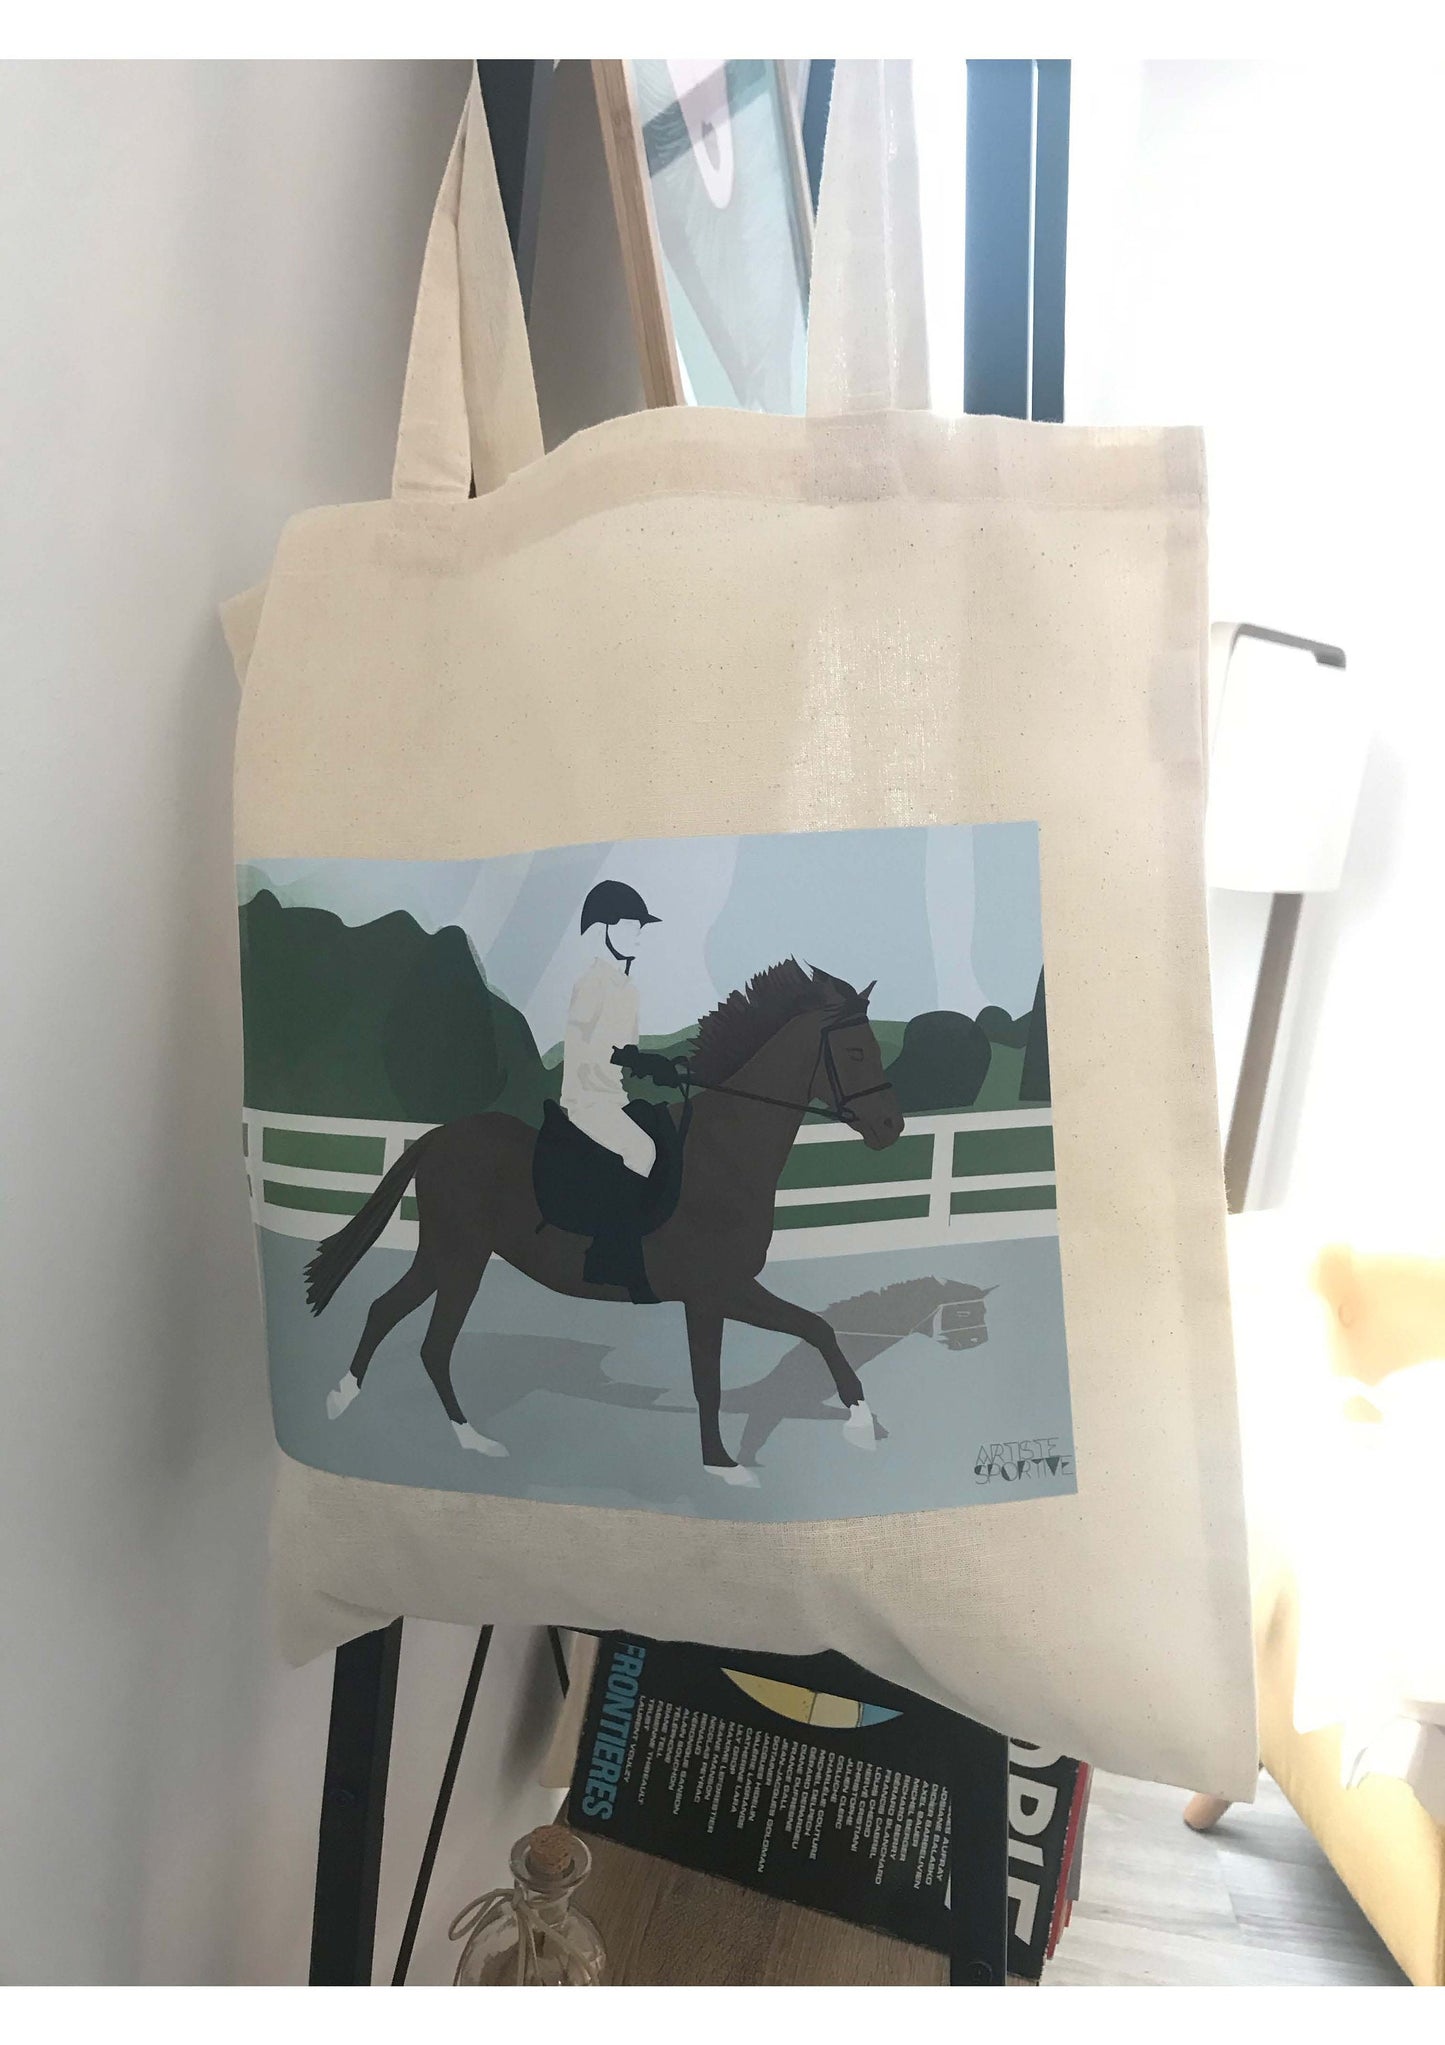 Tote bag ou sac d'équitation "Sur le cheval"